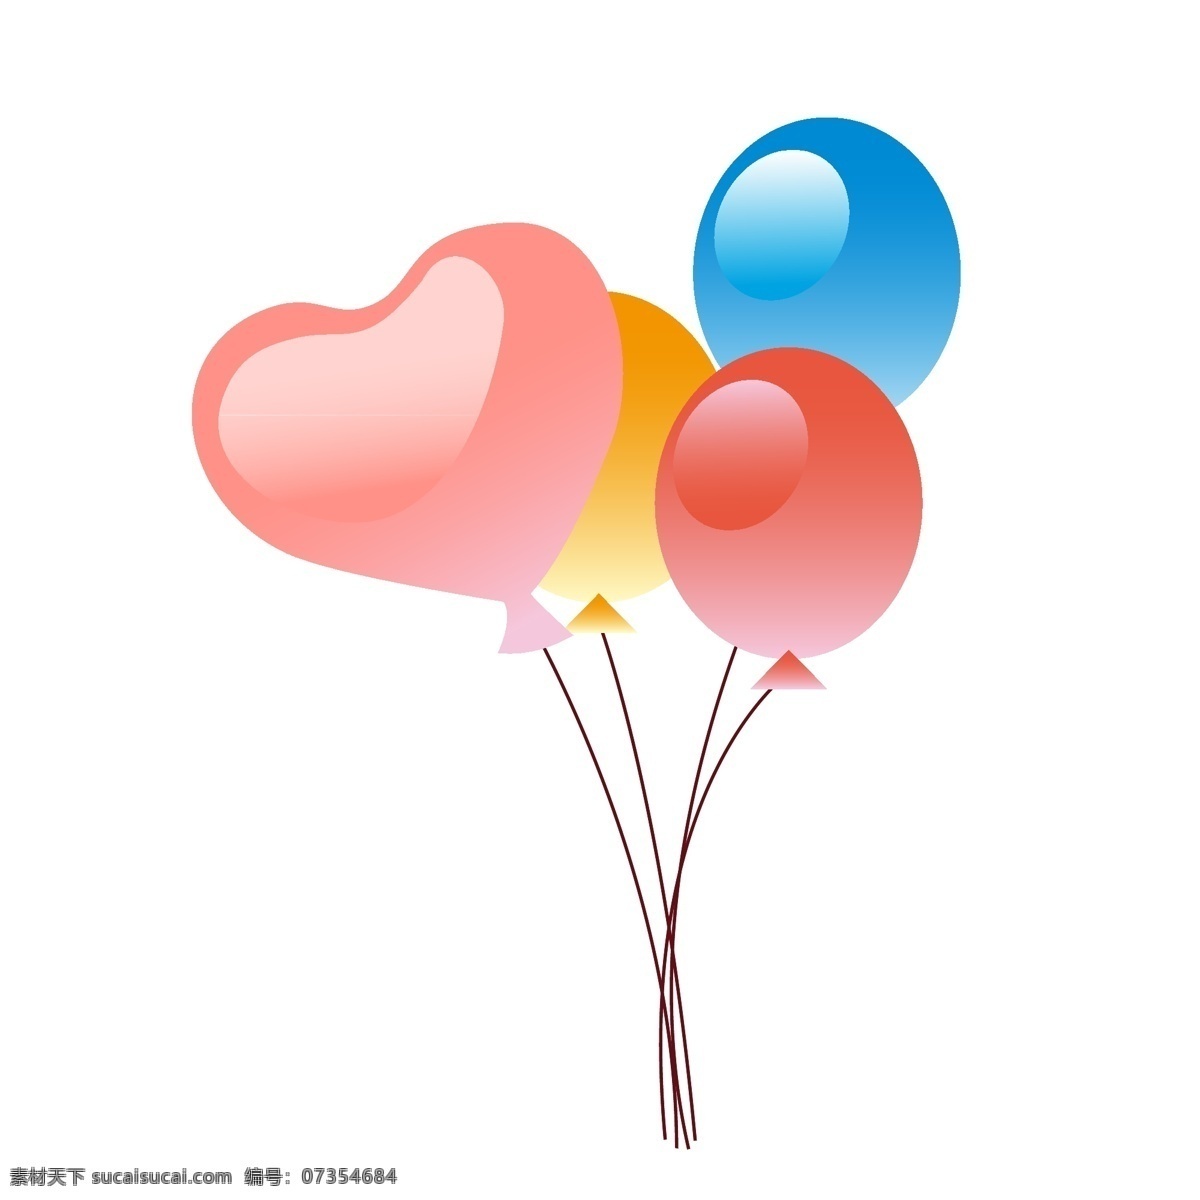 情人节 彩色 气球 装饰 卡通 喜庆 心形 情人节主题 桃心 装饰图案 漂浮气球 桃心气球 卡通气球 庆典